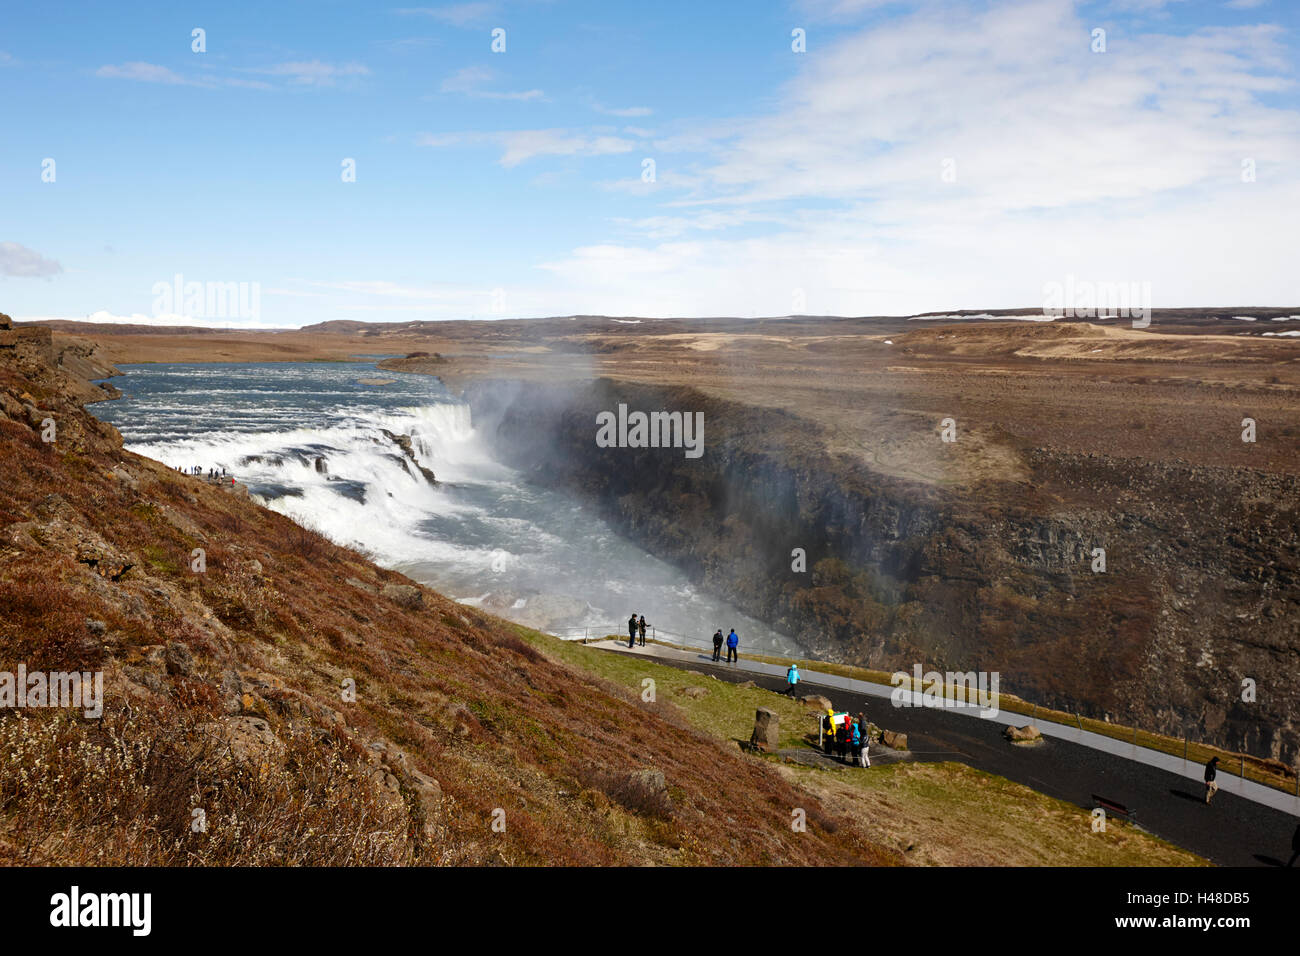 Haut de la route à la voie d'eau de gullfoss dans le cercle d'or l'Islande Banque D'Images